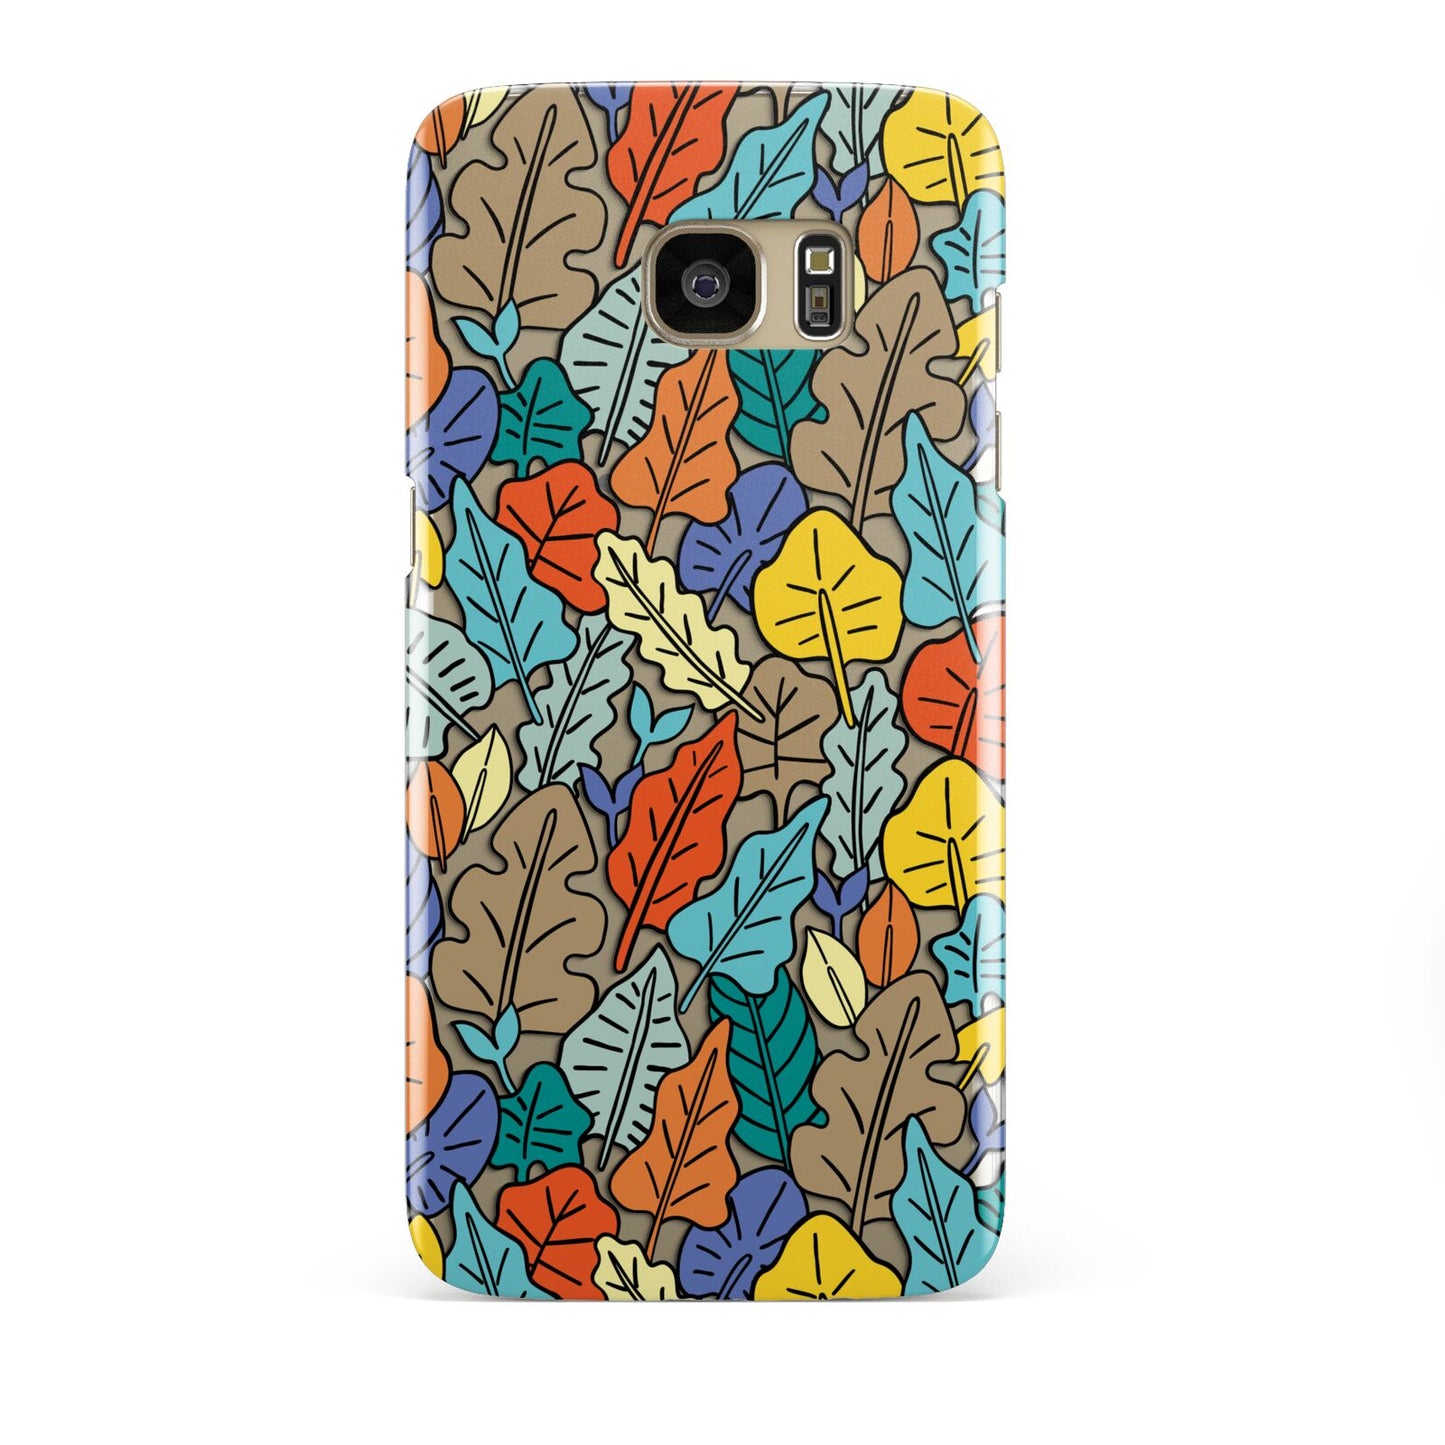 Autumn Leaves Samsung Galaxy S7 Edge Case